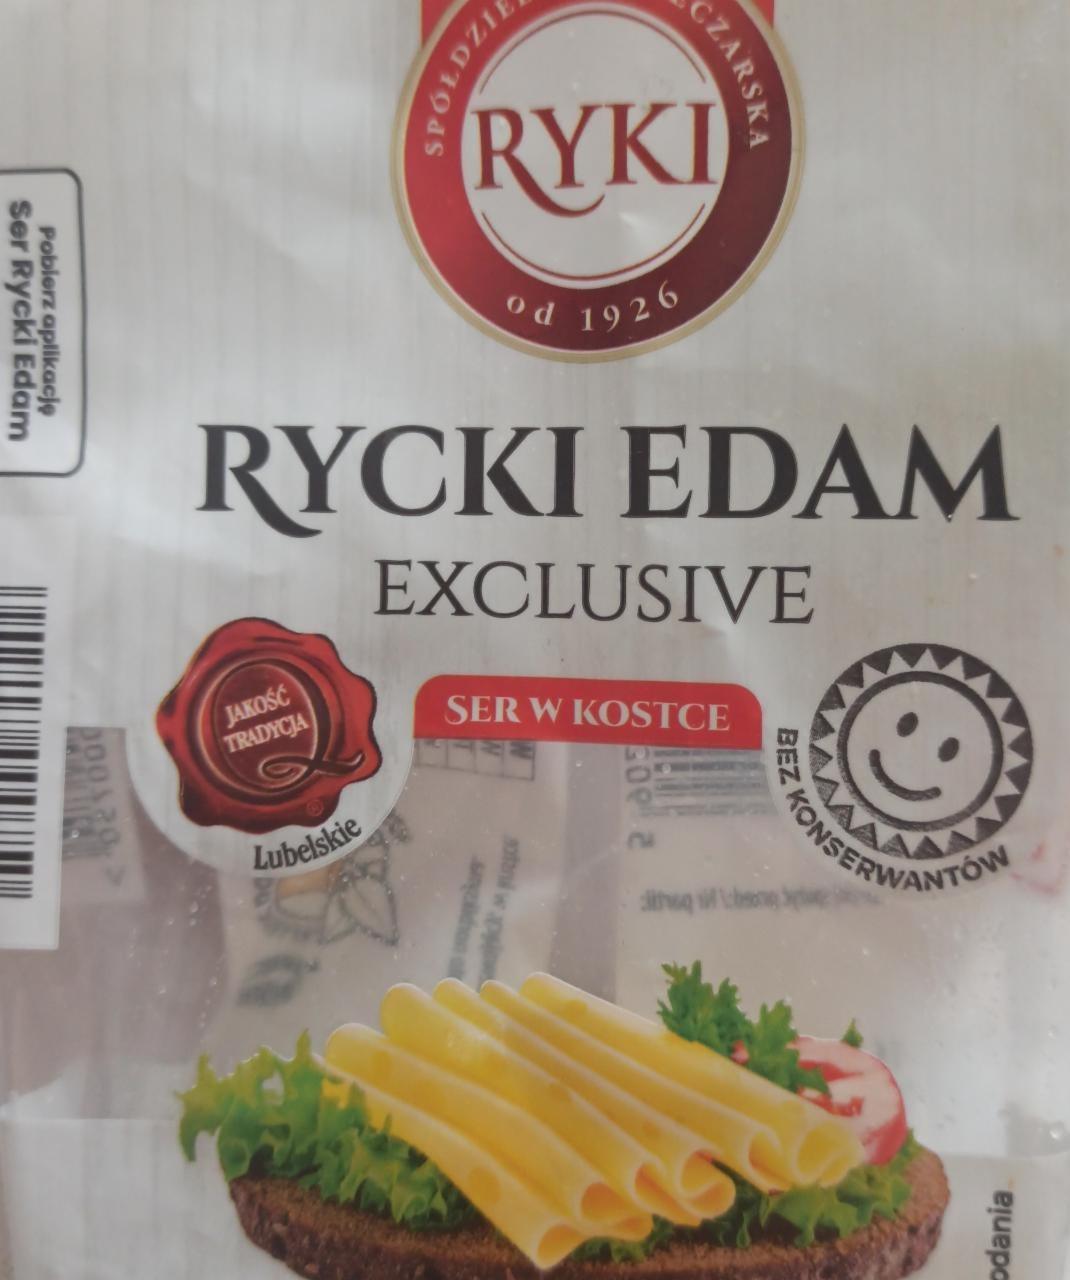 Zdjęcia - Rycki Edam Exclusive ser w kostce RYKI